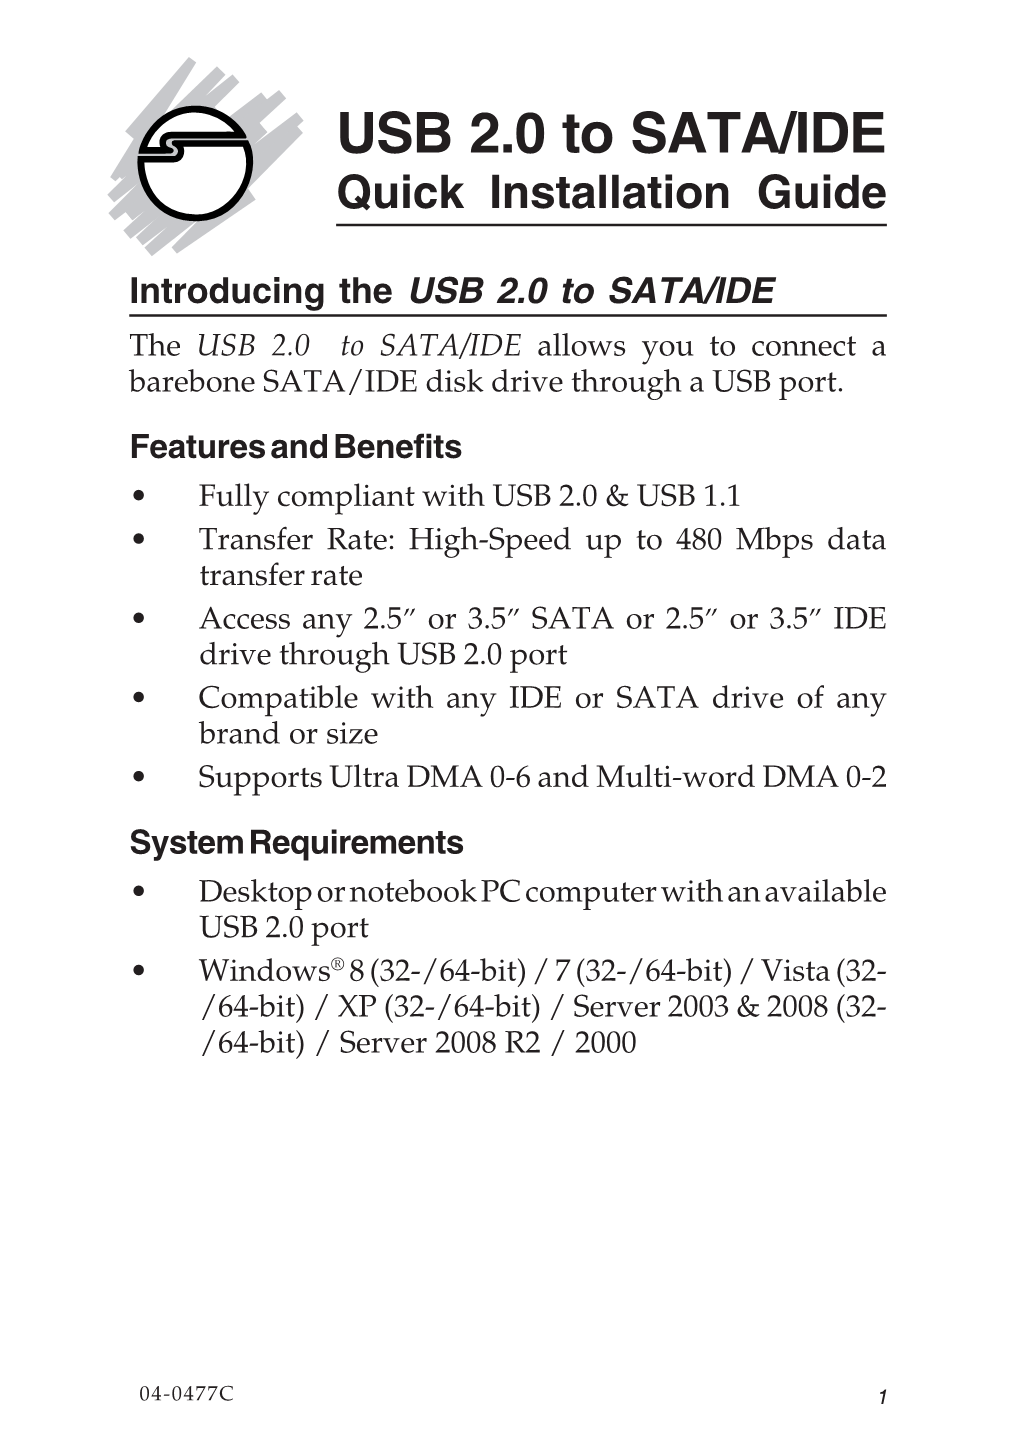 USB 2.0 to SATA/IDE Quick Installation Guide